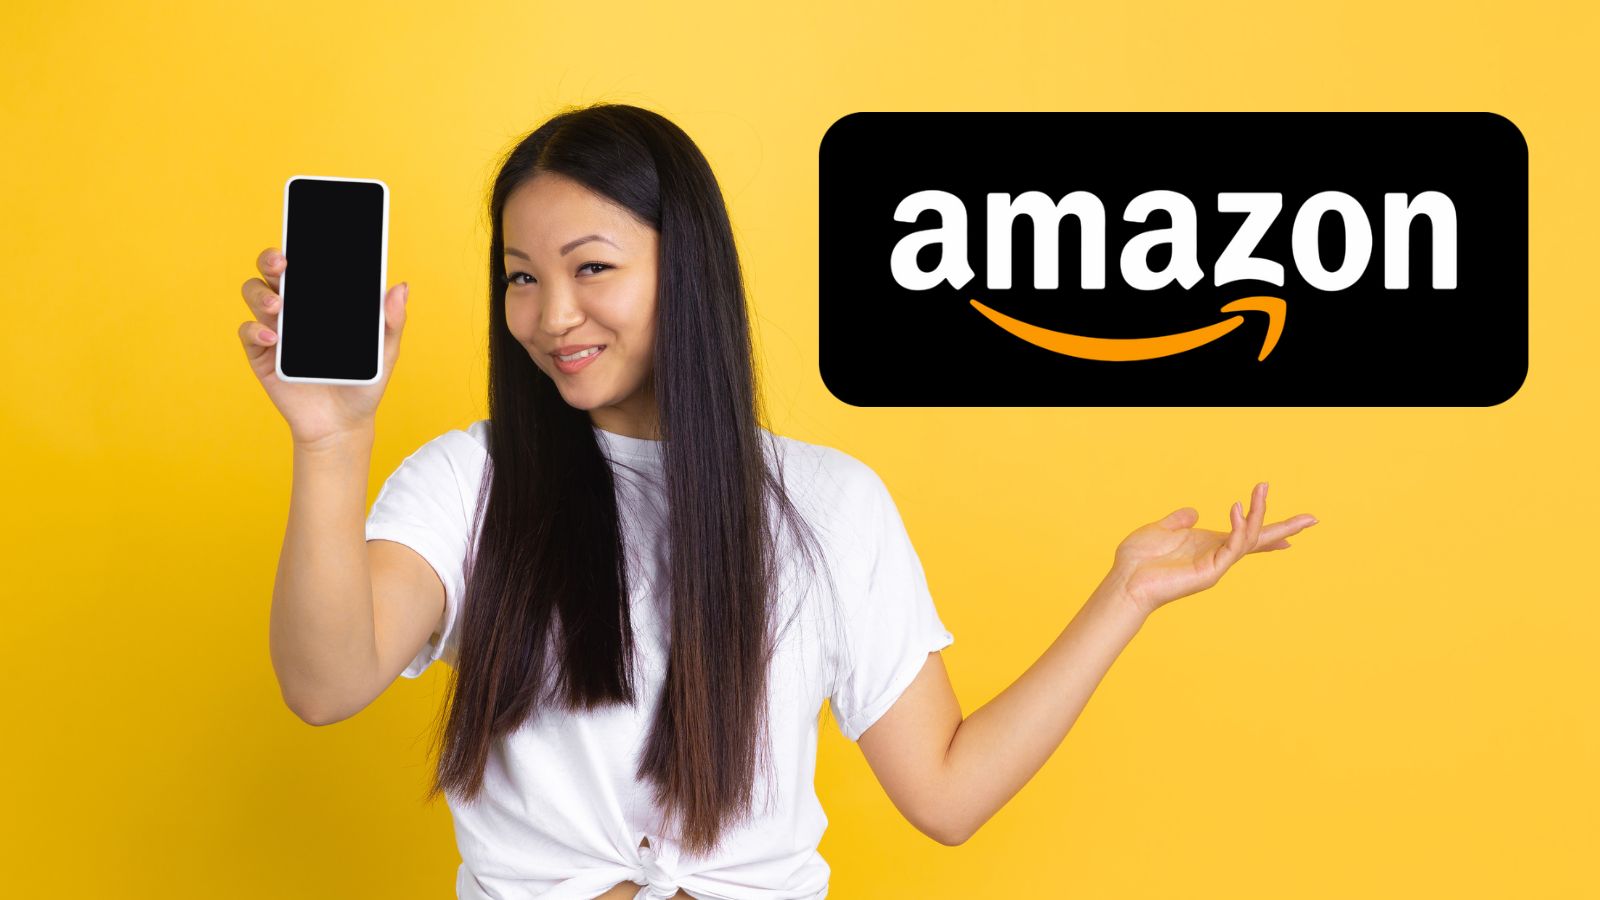 Amazon BOMBA: distrutta Unieuro con smartphone GRATIS e offerte al 90%